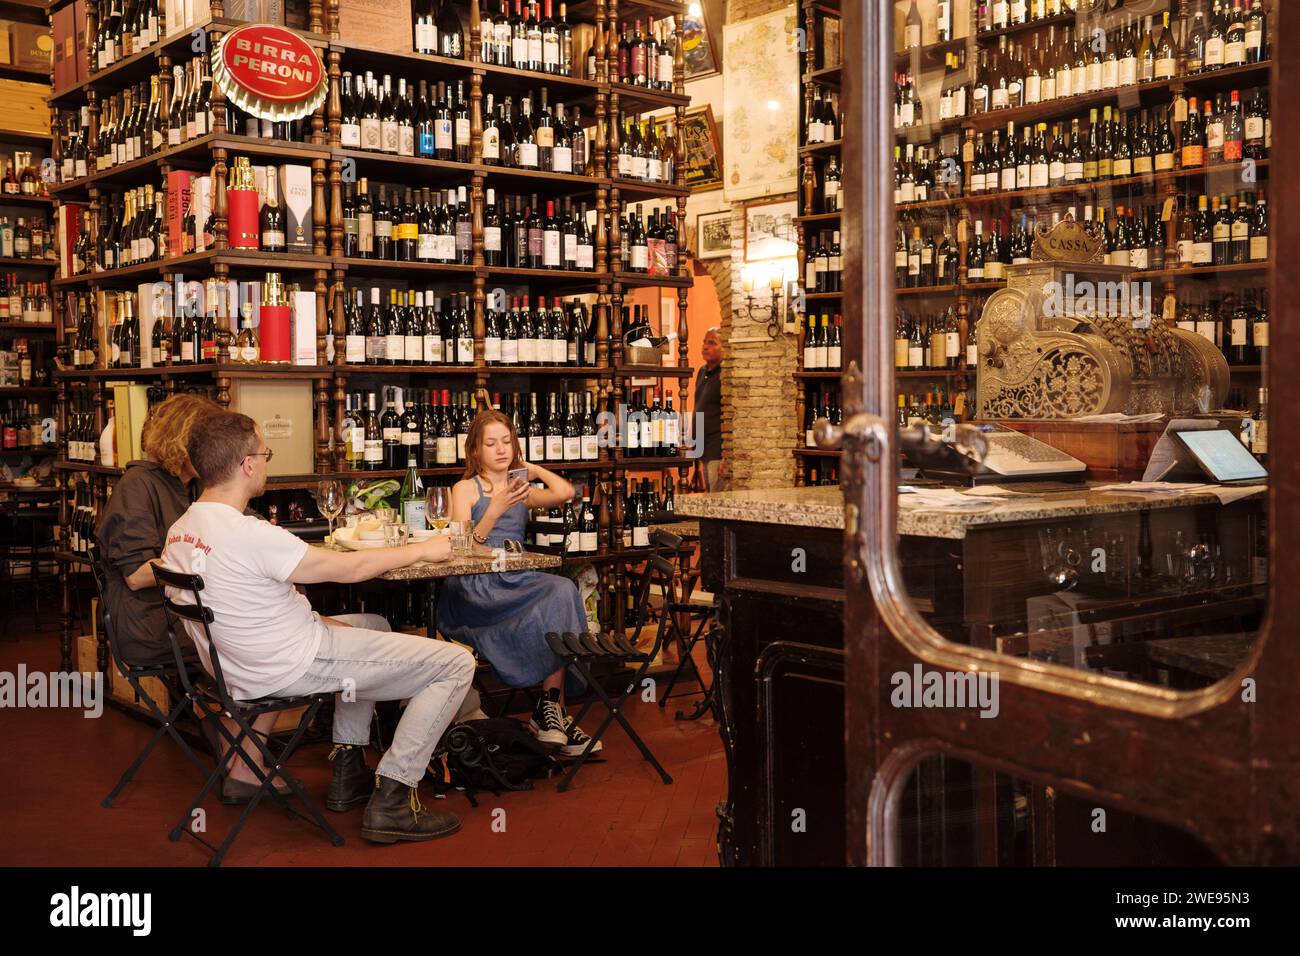 Rome. Italy. Enoteca Buccone Vini e Olii, historic wine bar, shop and restaurant on Via di Ripetta, Campo Marzio. Stock Photo